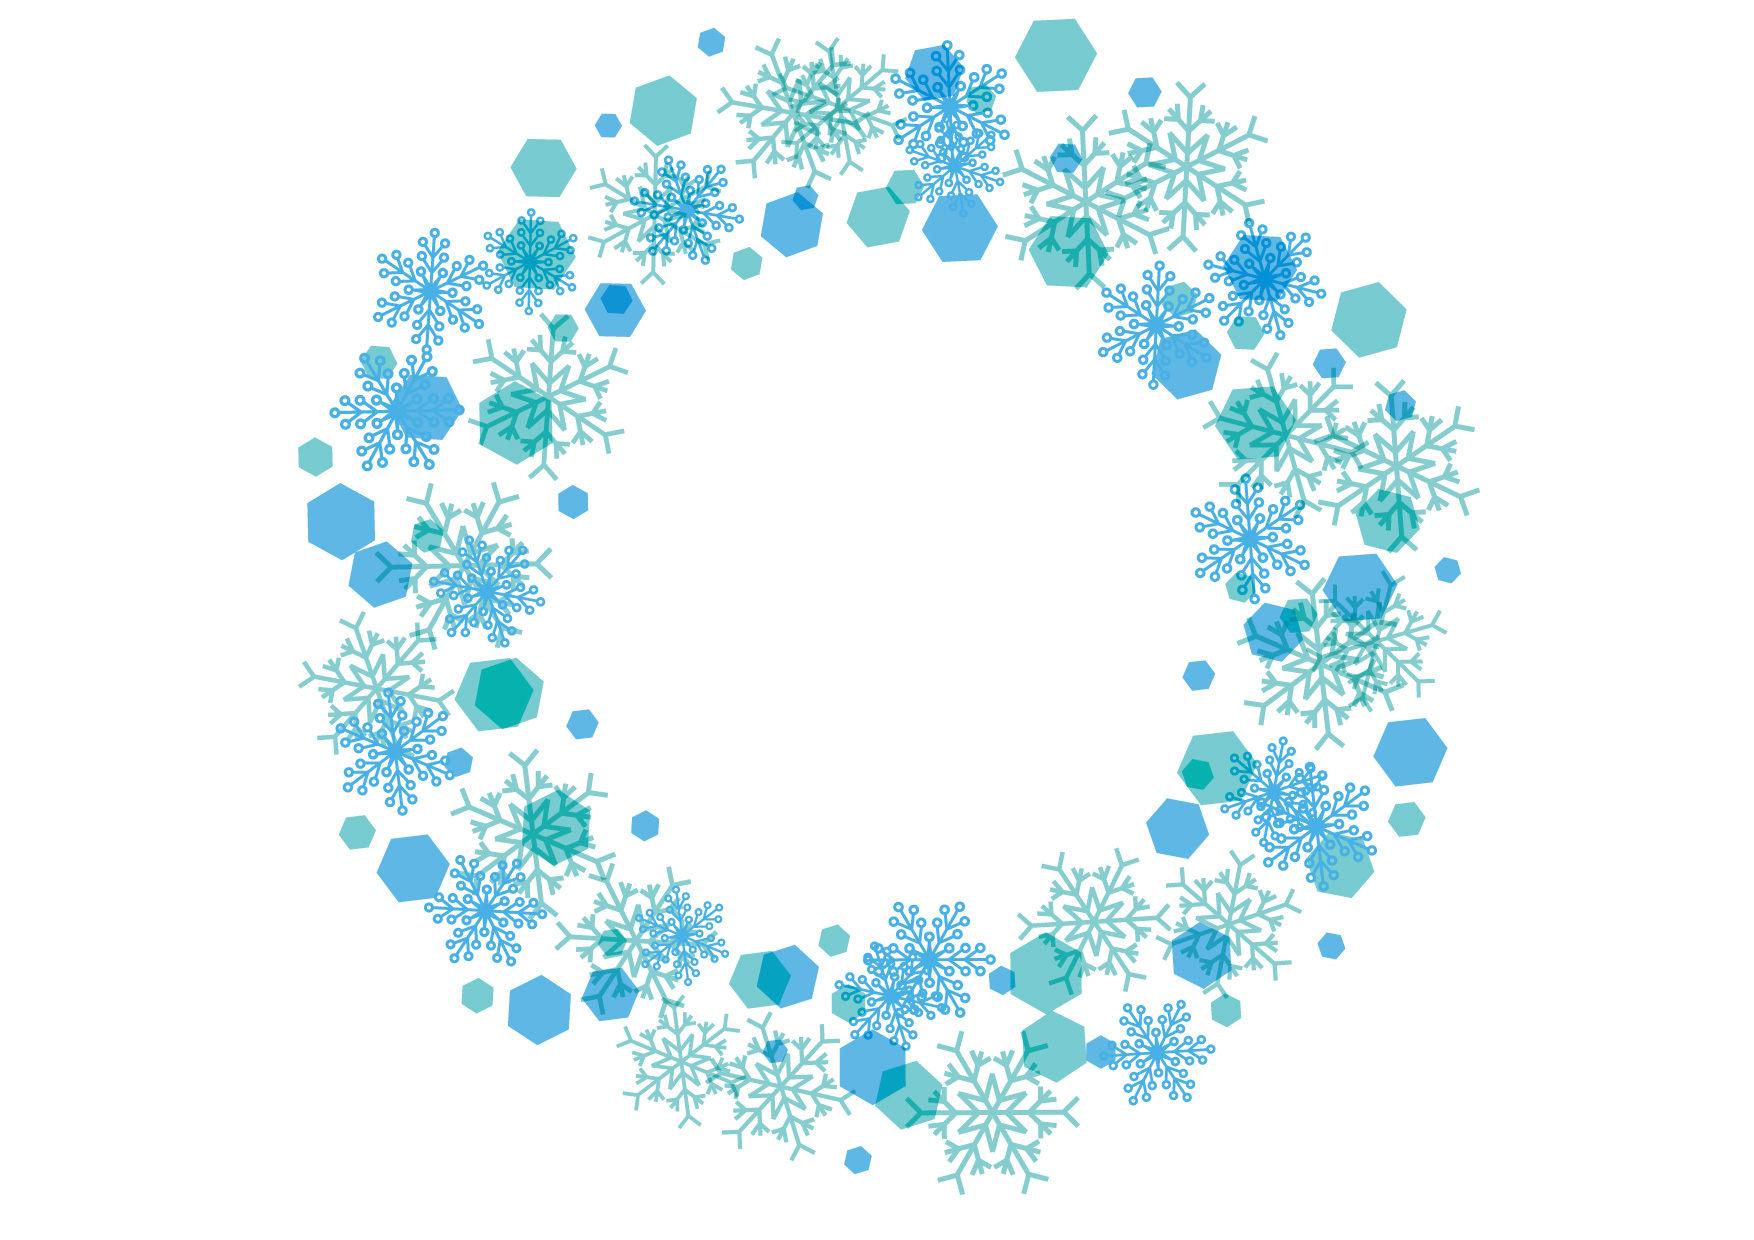 可愛いイラスト無料 雪の結晶 フレーム 背景 青色 Free Illustration Snowflakes Frame Background Blue 公式 イラストダウンロード